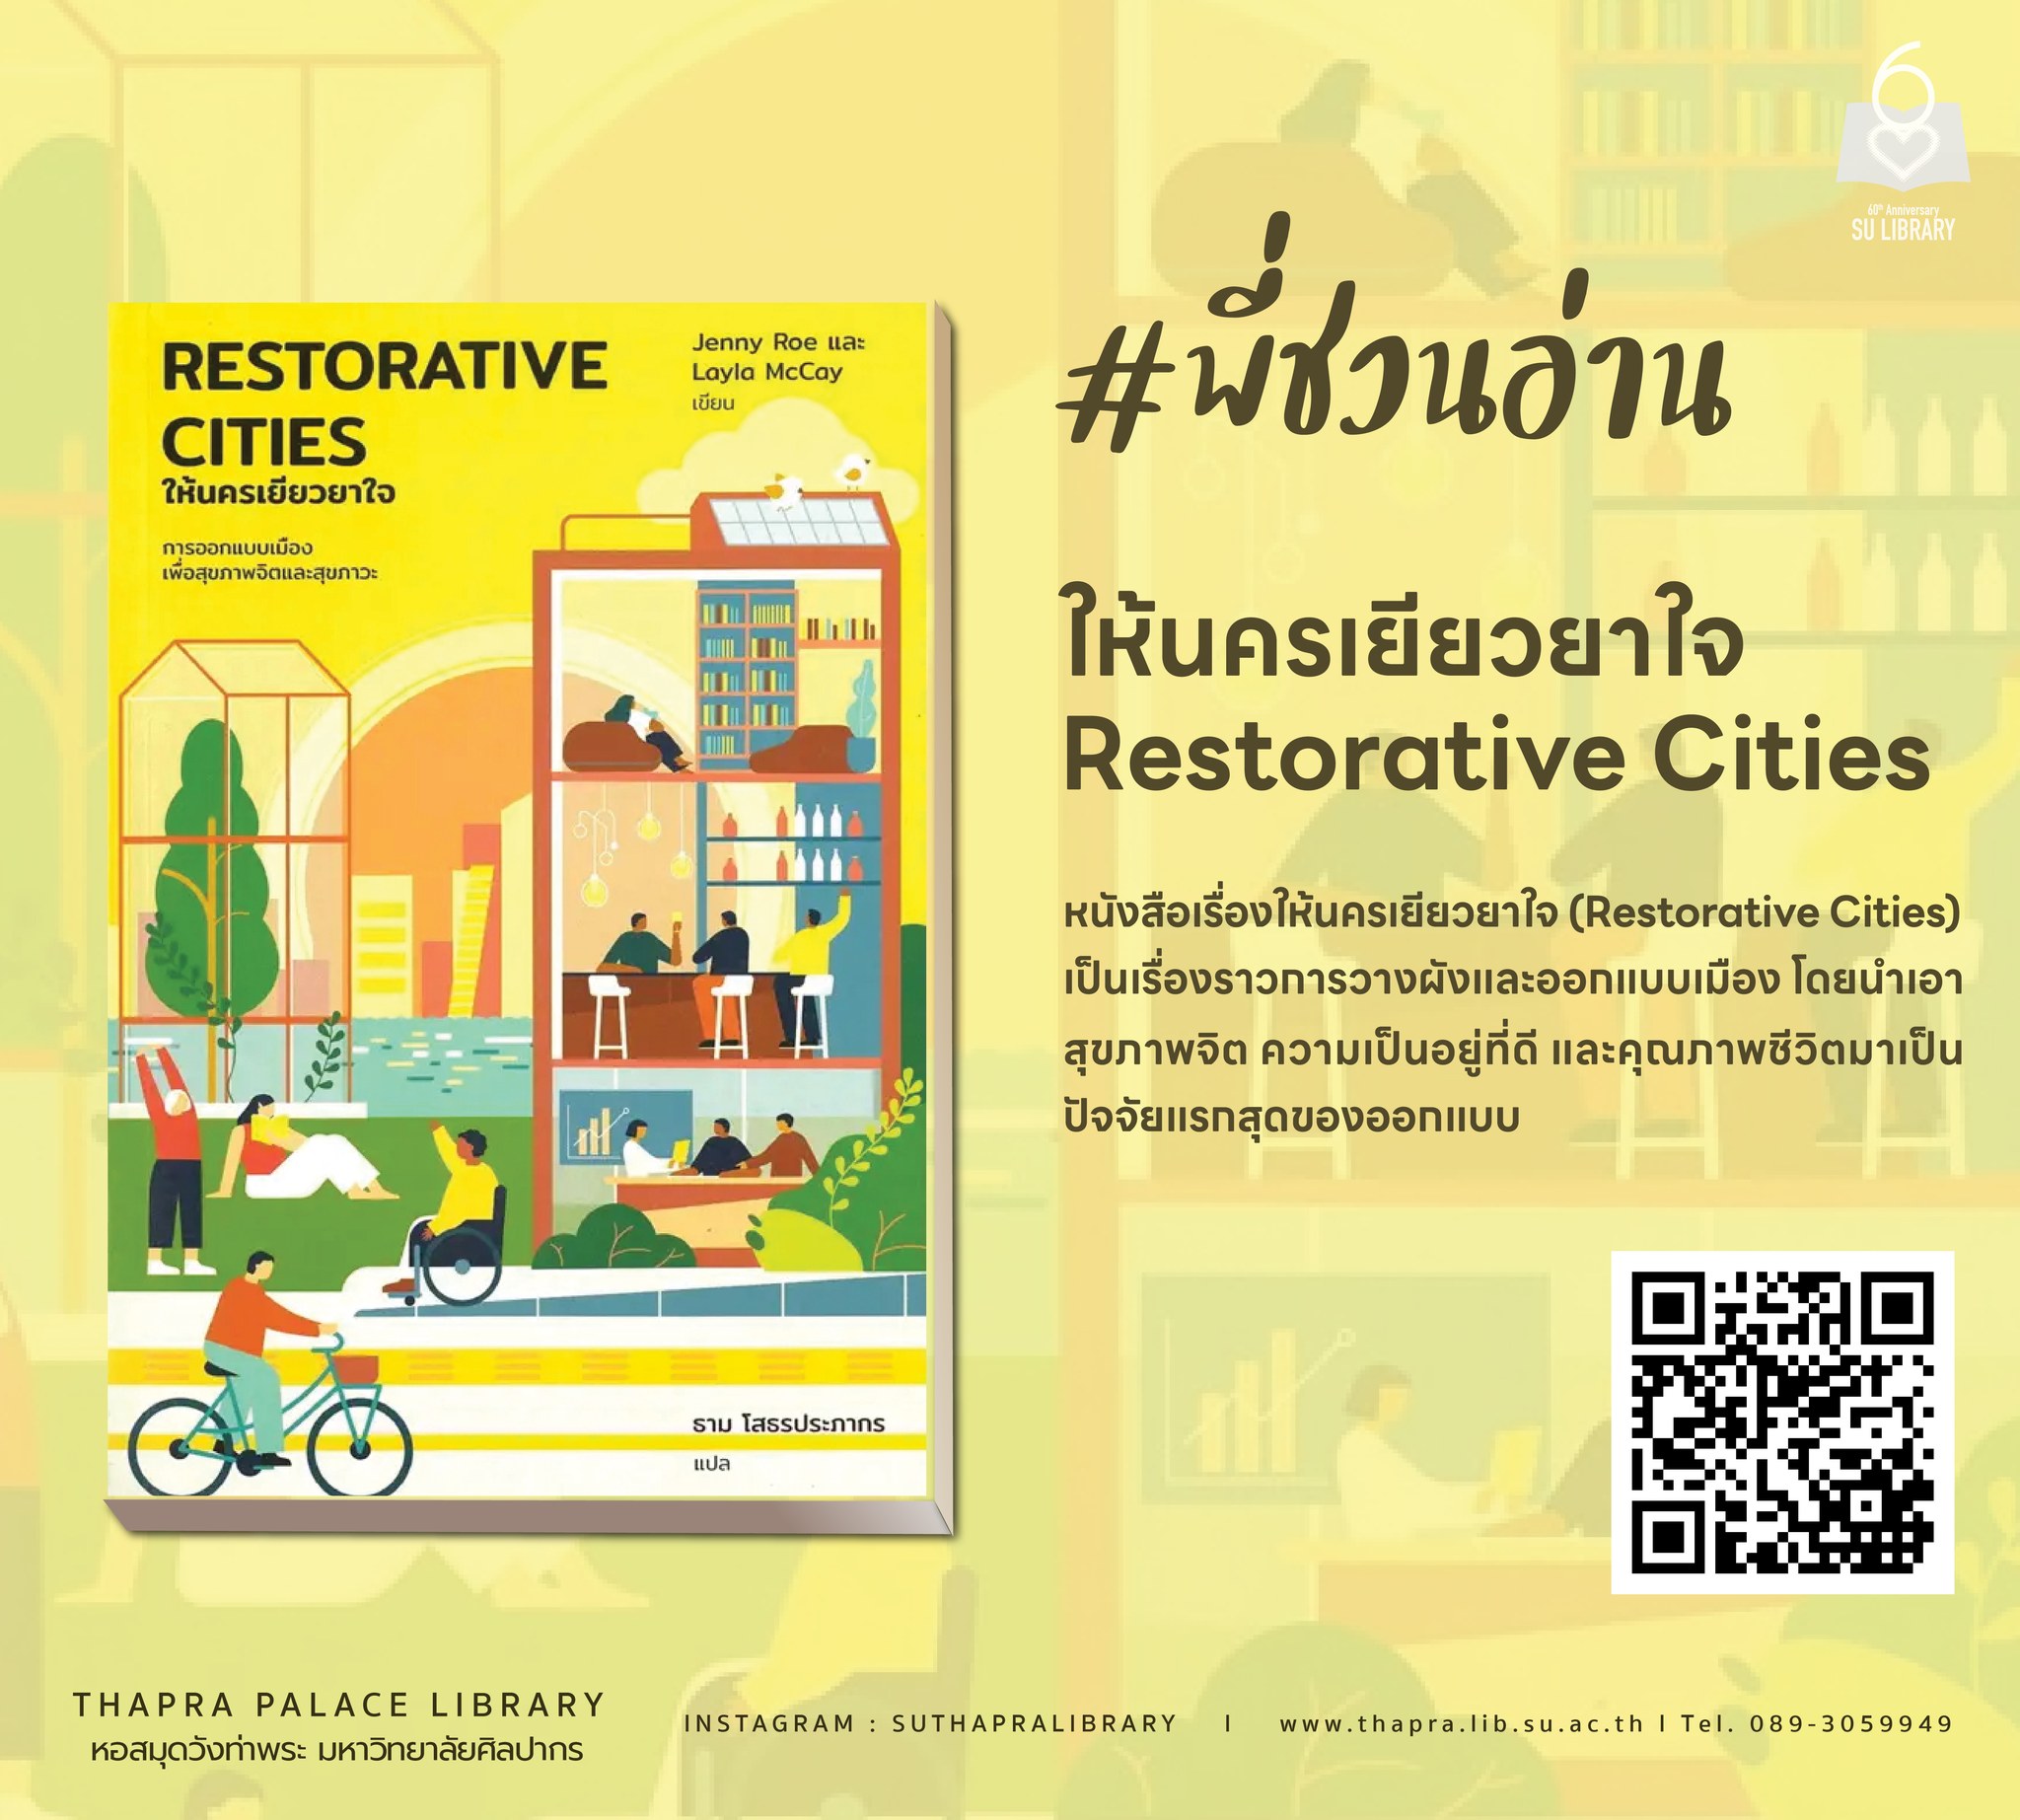 ให้นครเยียวยาใจ | Restorative Cities